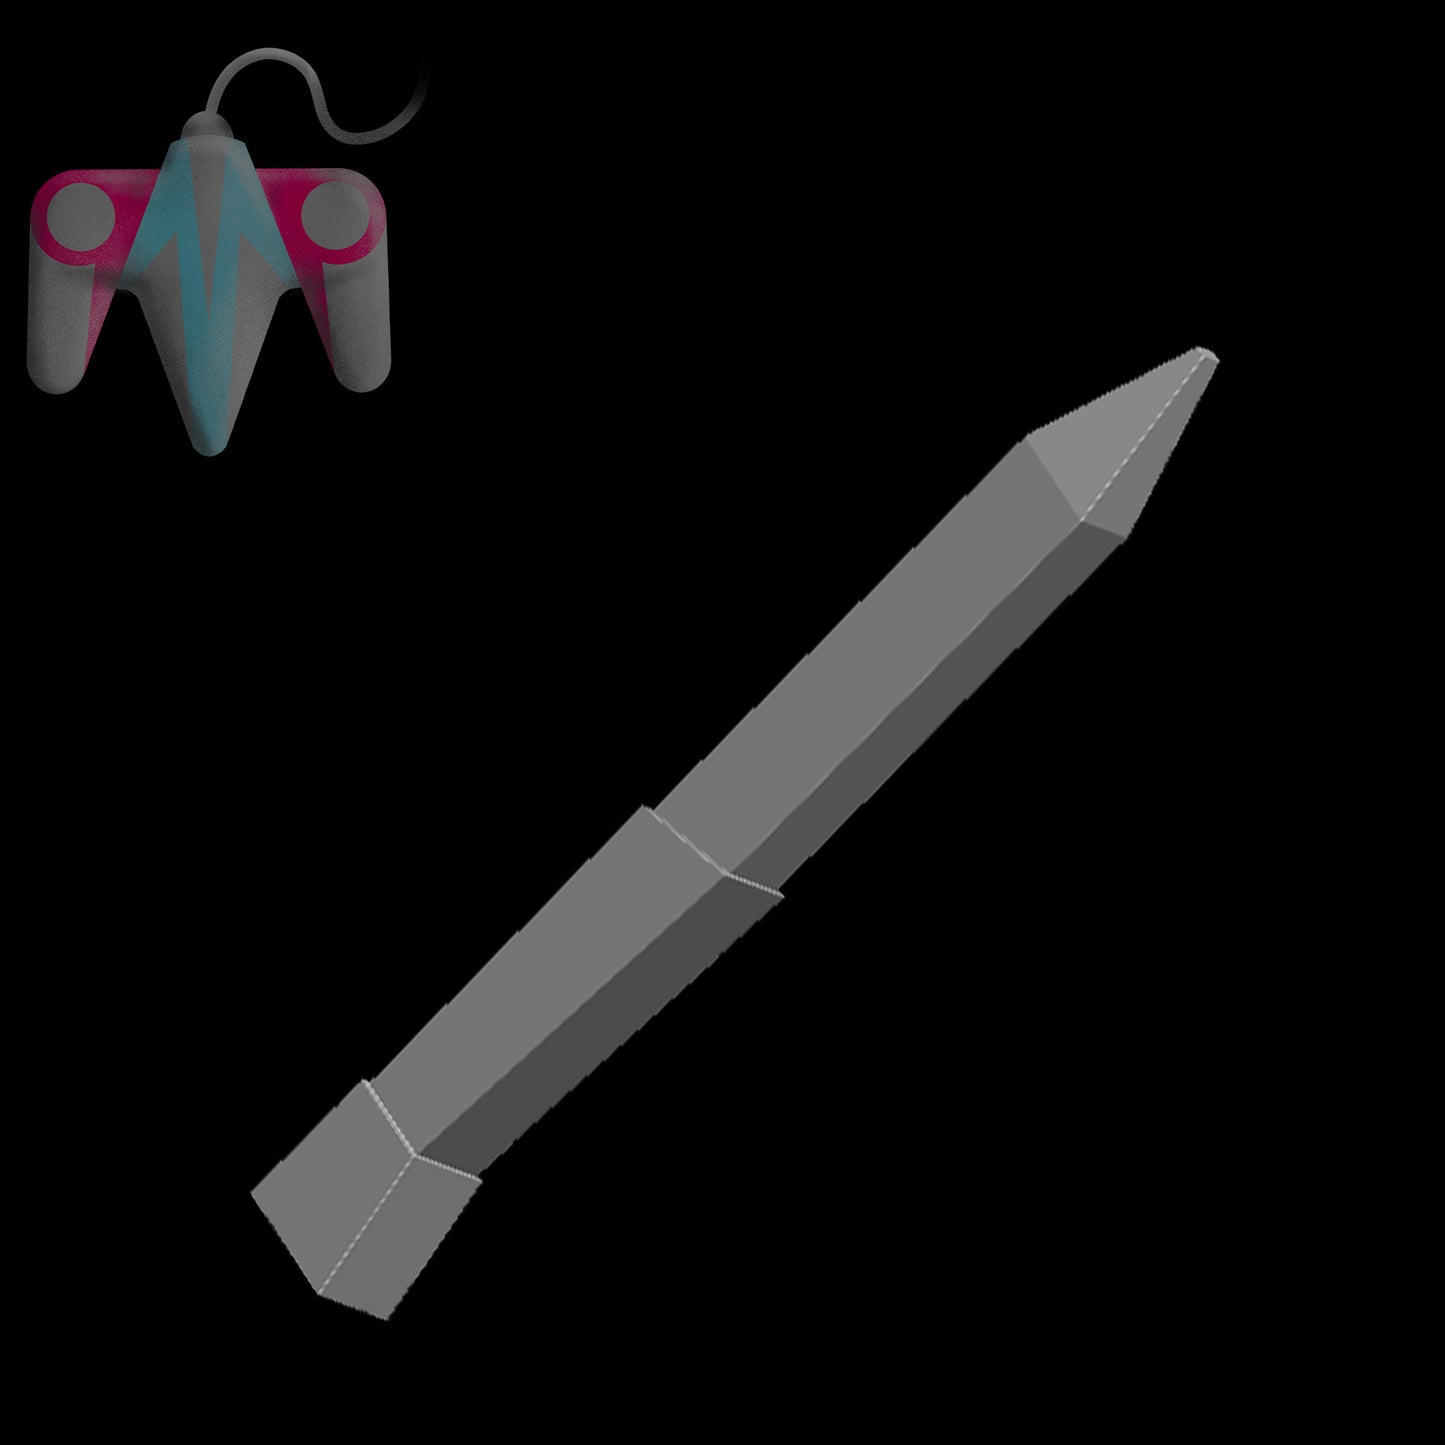 OSRS Knife (3D File)